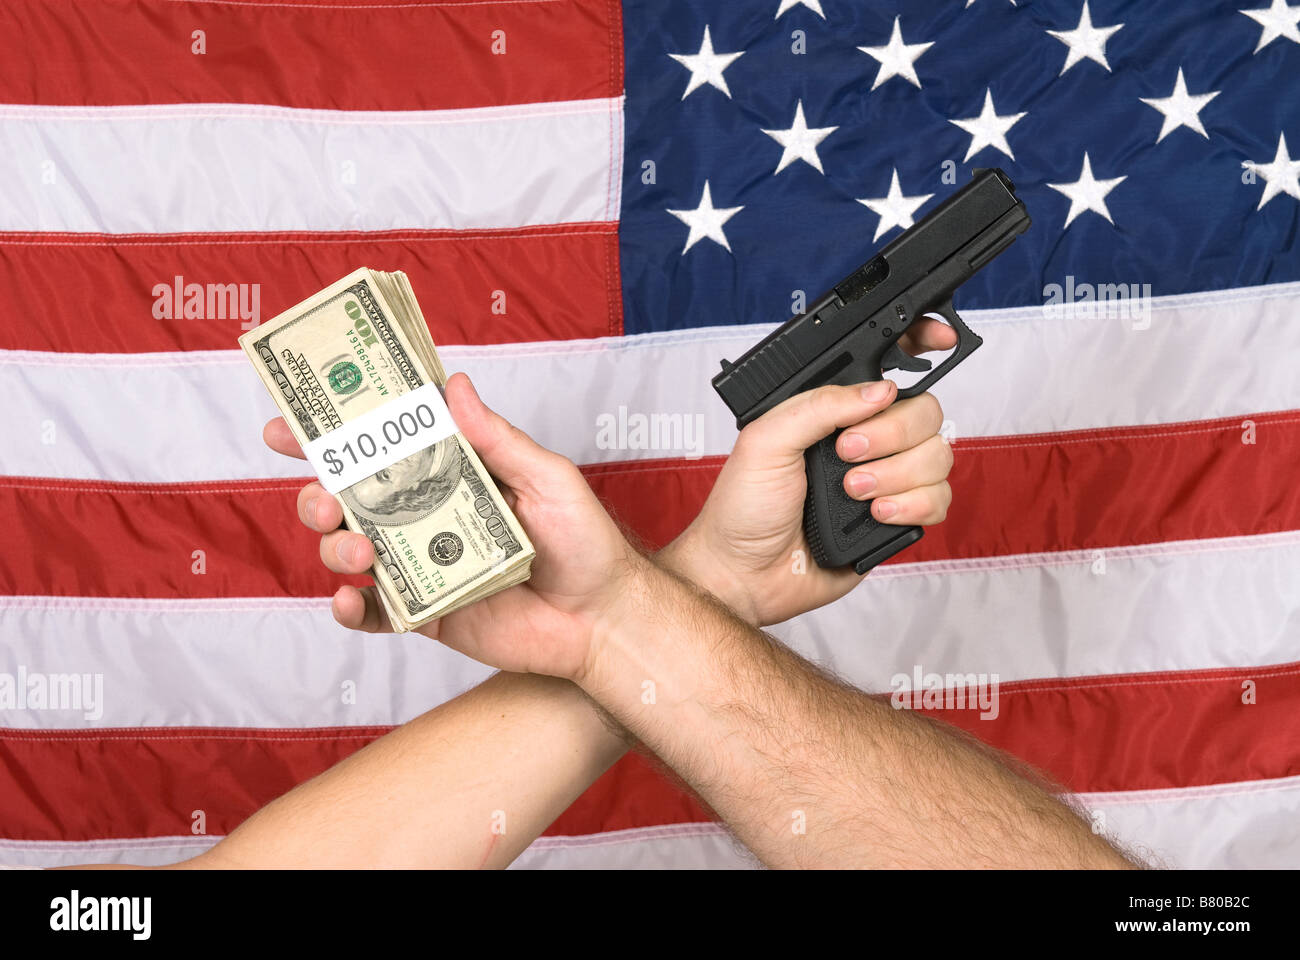 Bargeld und eine Waffe hielt gegen den amerikanischen Flan ein Symbol für viele Dinge in Amerika wie Terrorismus Kriminalität und Gelegenheit hängt Stockfoto